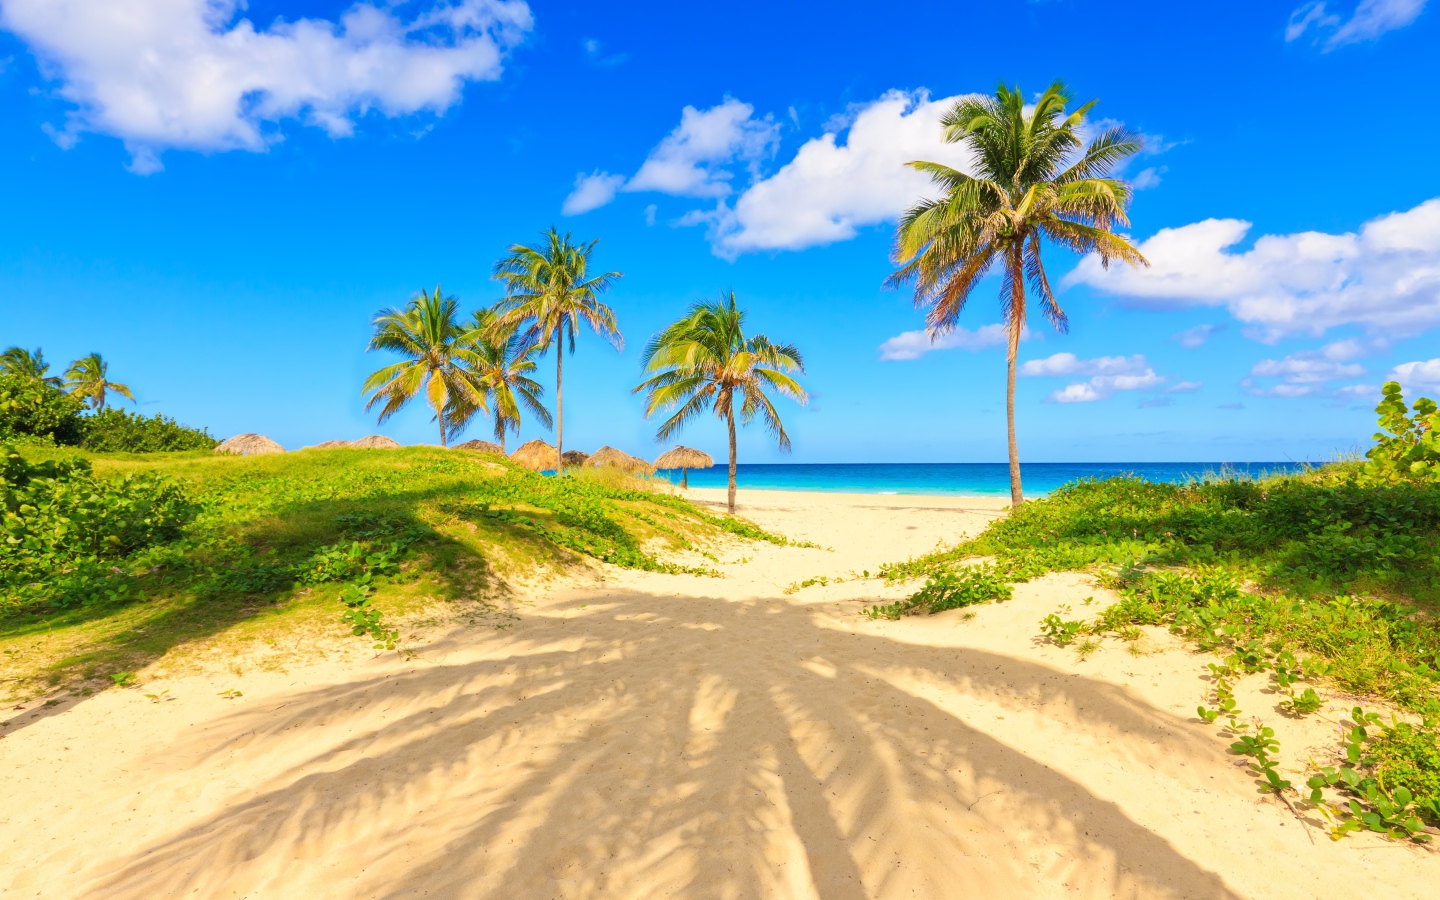 Пальма отбрасывает тень на песке на тропическом пляже